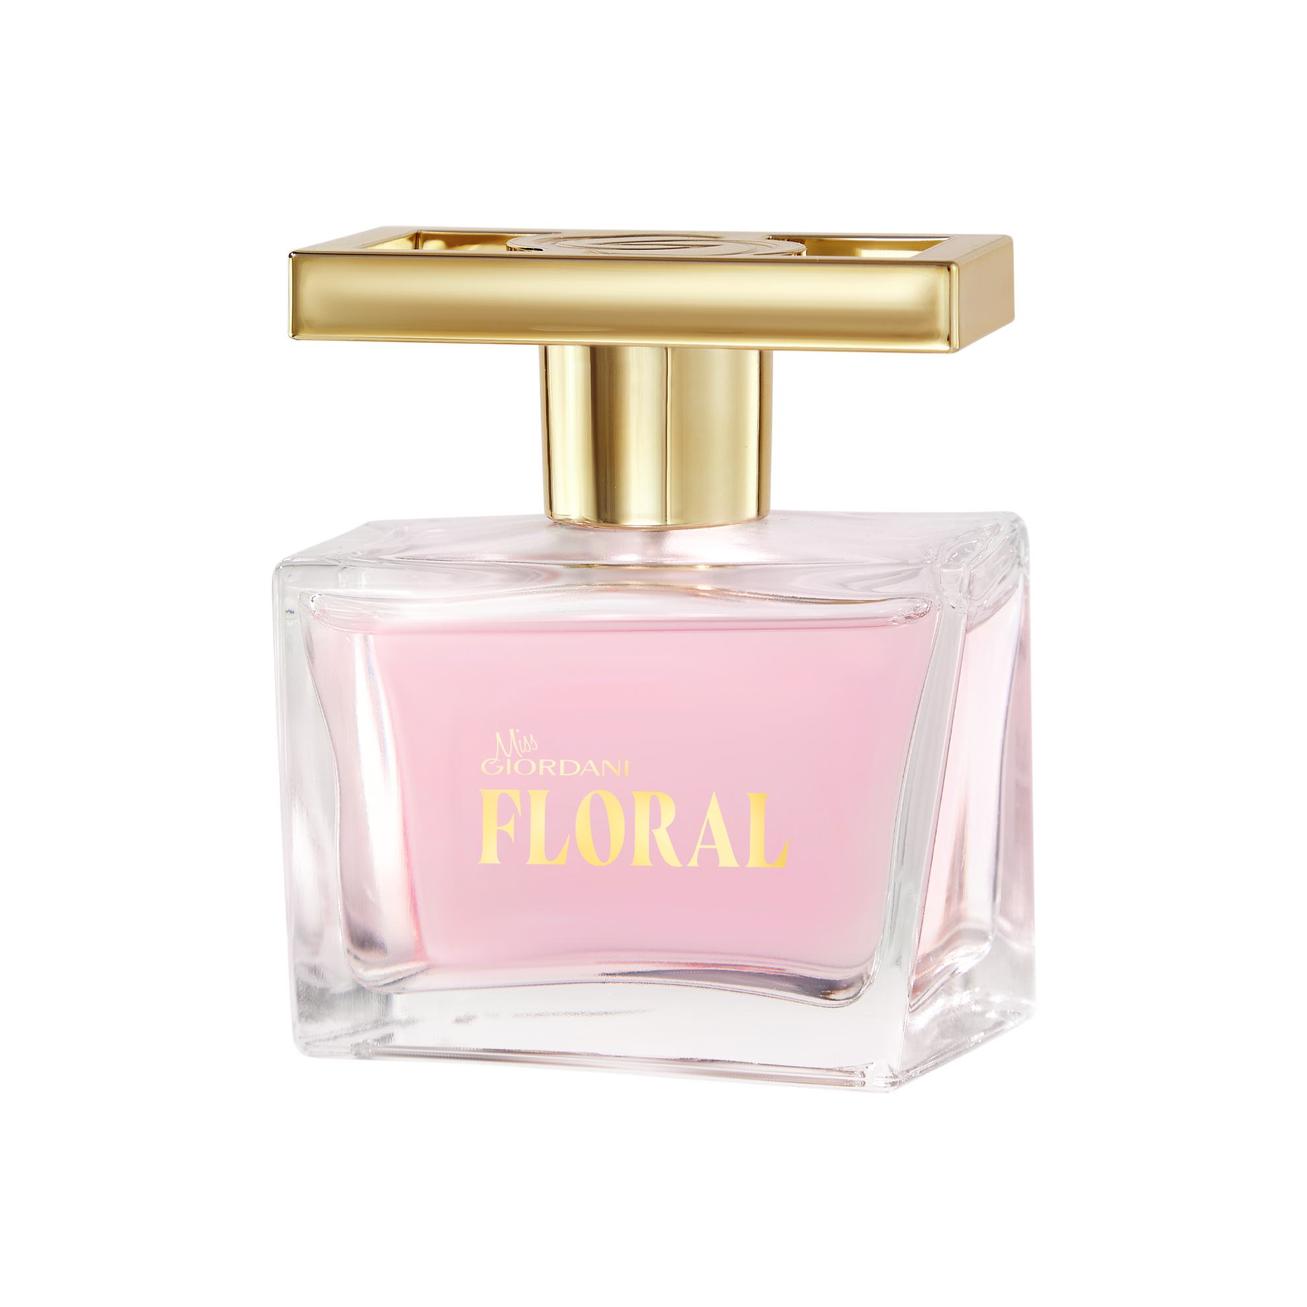 Oferta de Eau de Parfum Miss Giordani Floral por 29,99€ en Oriflame